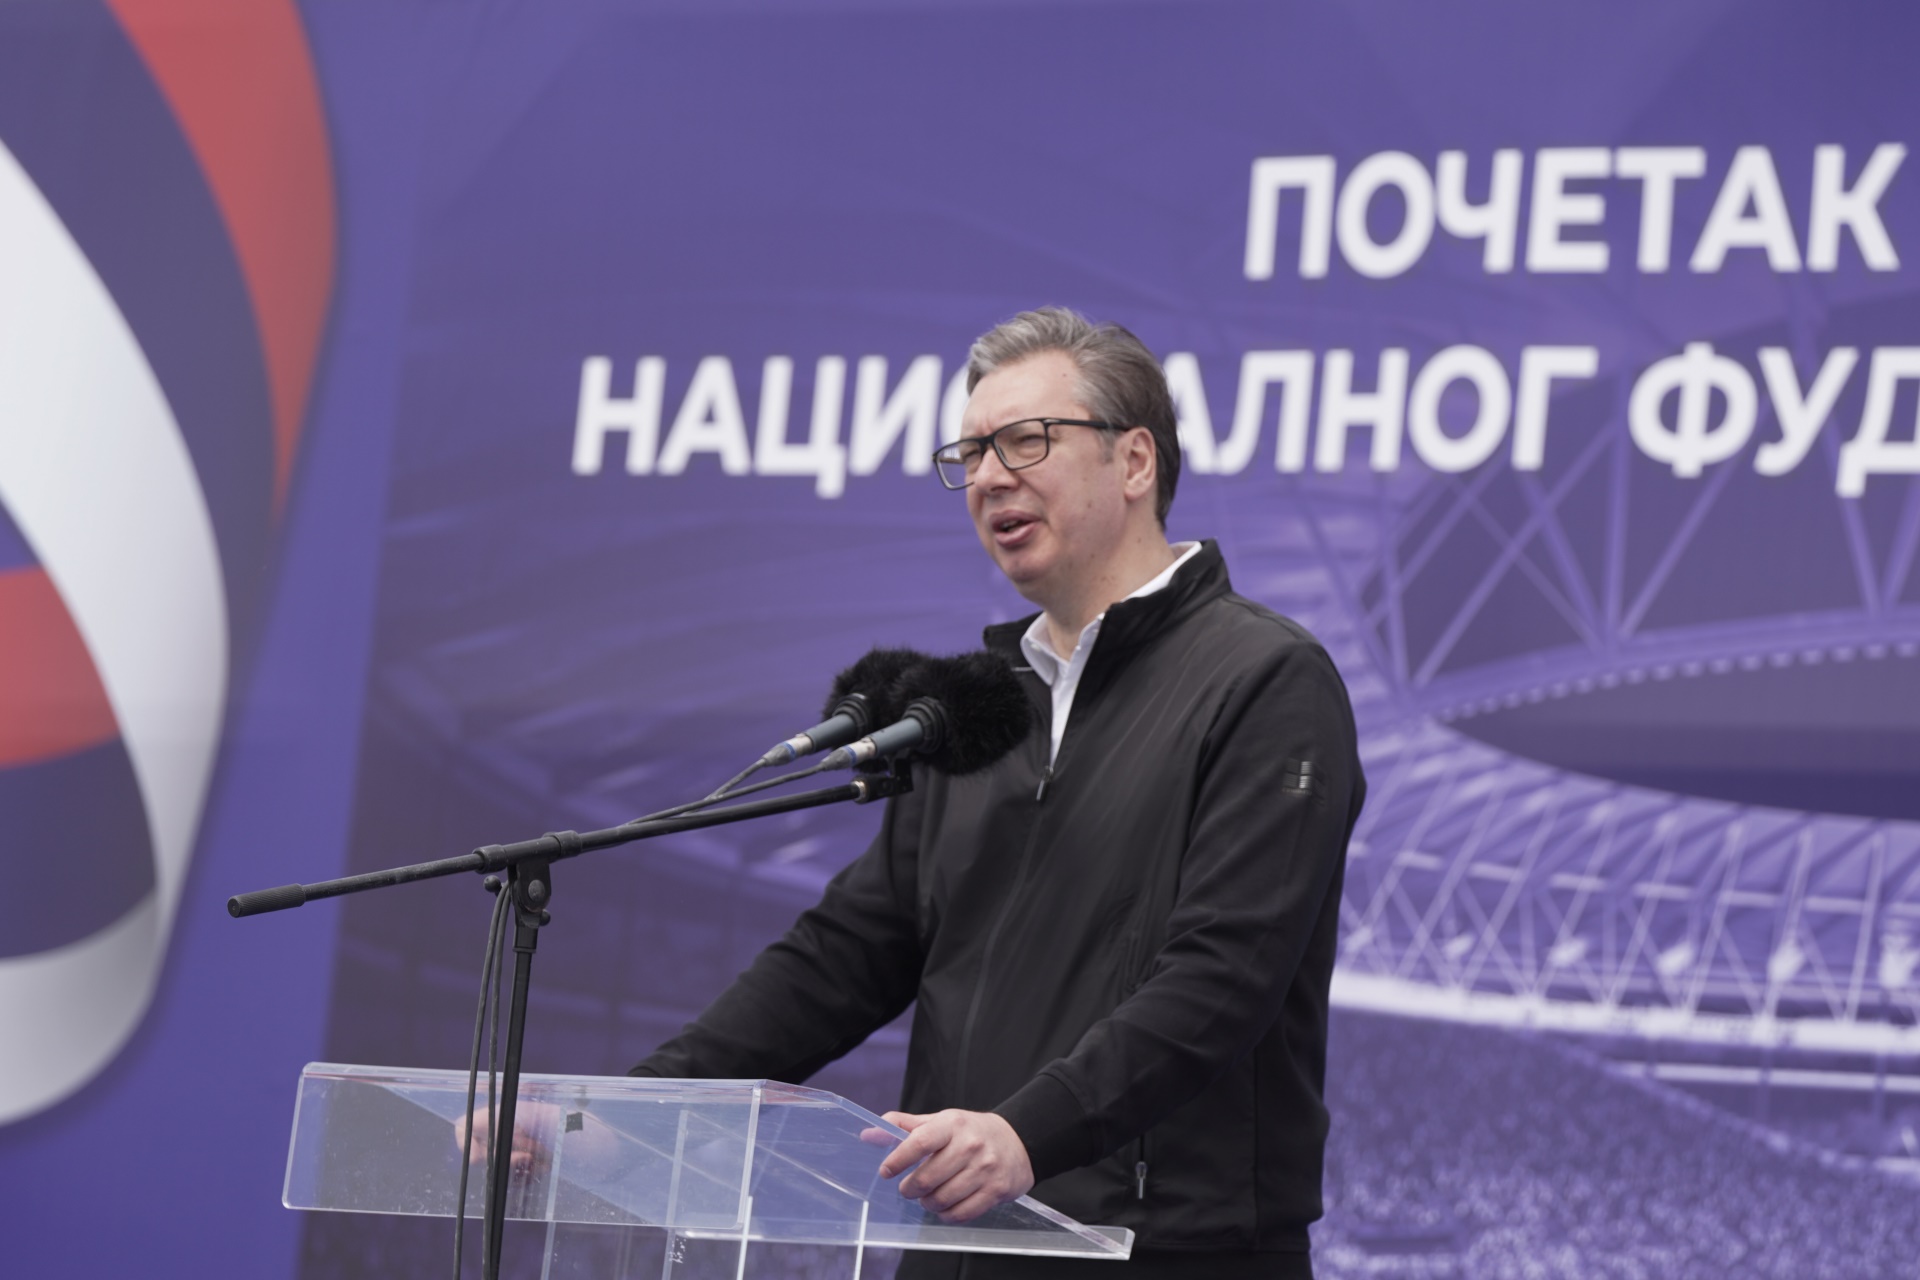 Председник Републике Србије Александар Вучић изјавио је да Национални стадион мора да буде завршен до 1. децембра 2026. године, да је договорено да се финале Лиге Европе игра на њему 2028. године, као и да ће бити један од три најлепша у Европи.